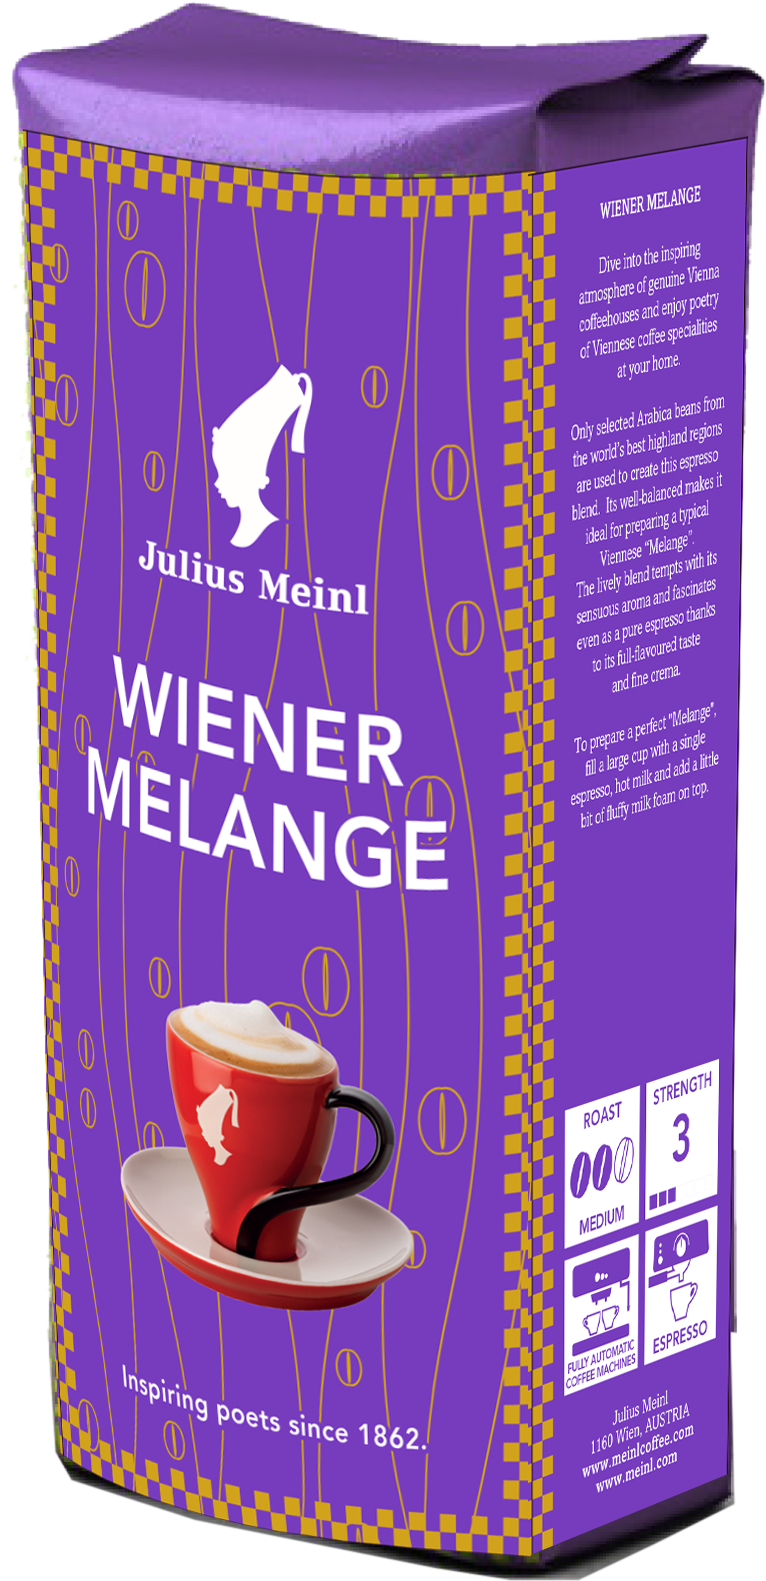 Viennese Melange Julius Meinl. Джулиус Майнл кофе в зернах. Julius Meinl растворимый кофе. Кофе Julius Meinl Espresso. Кофе meinl в зернах купить